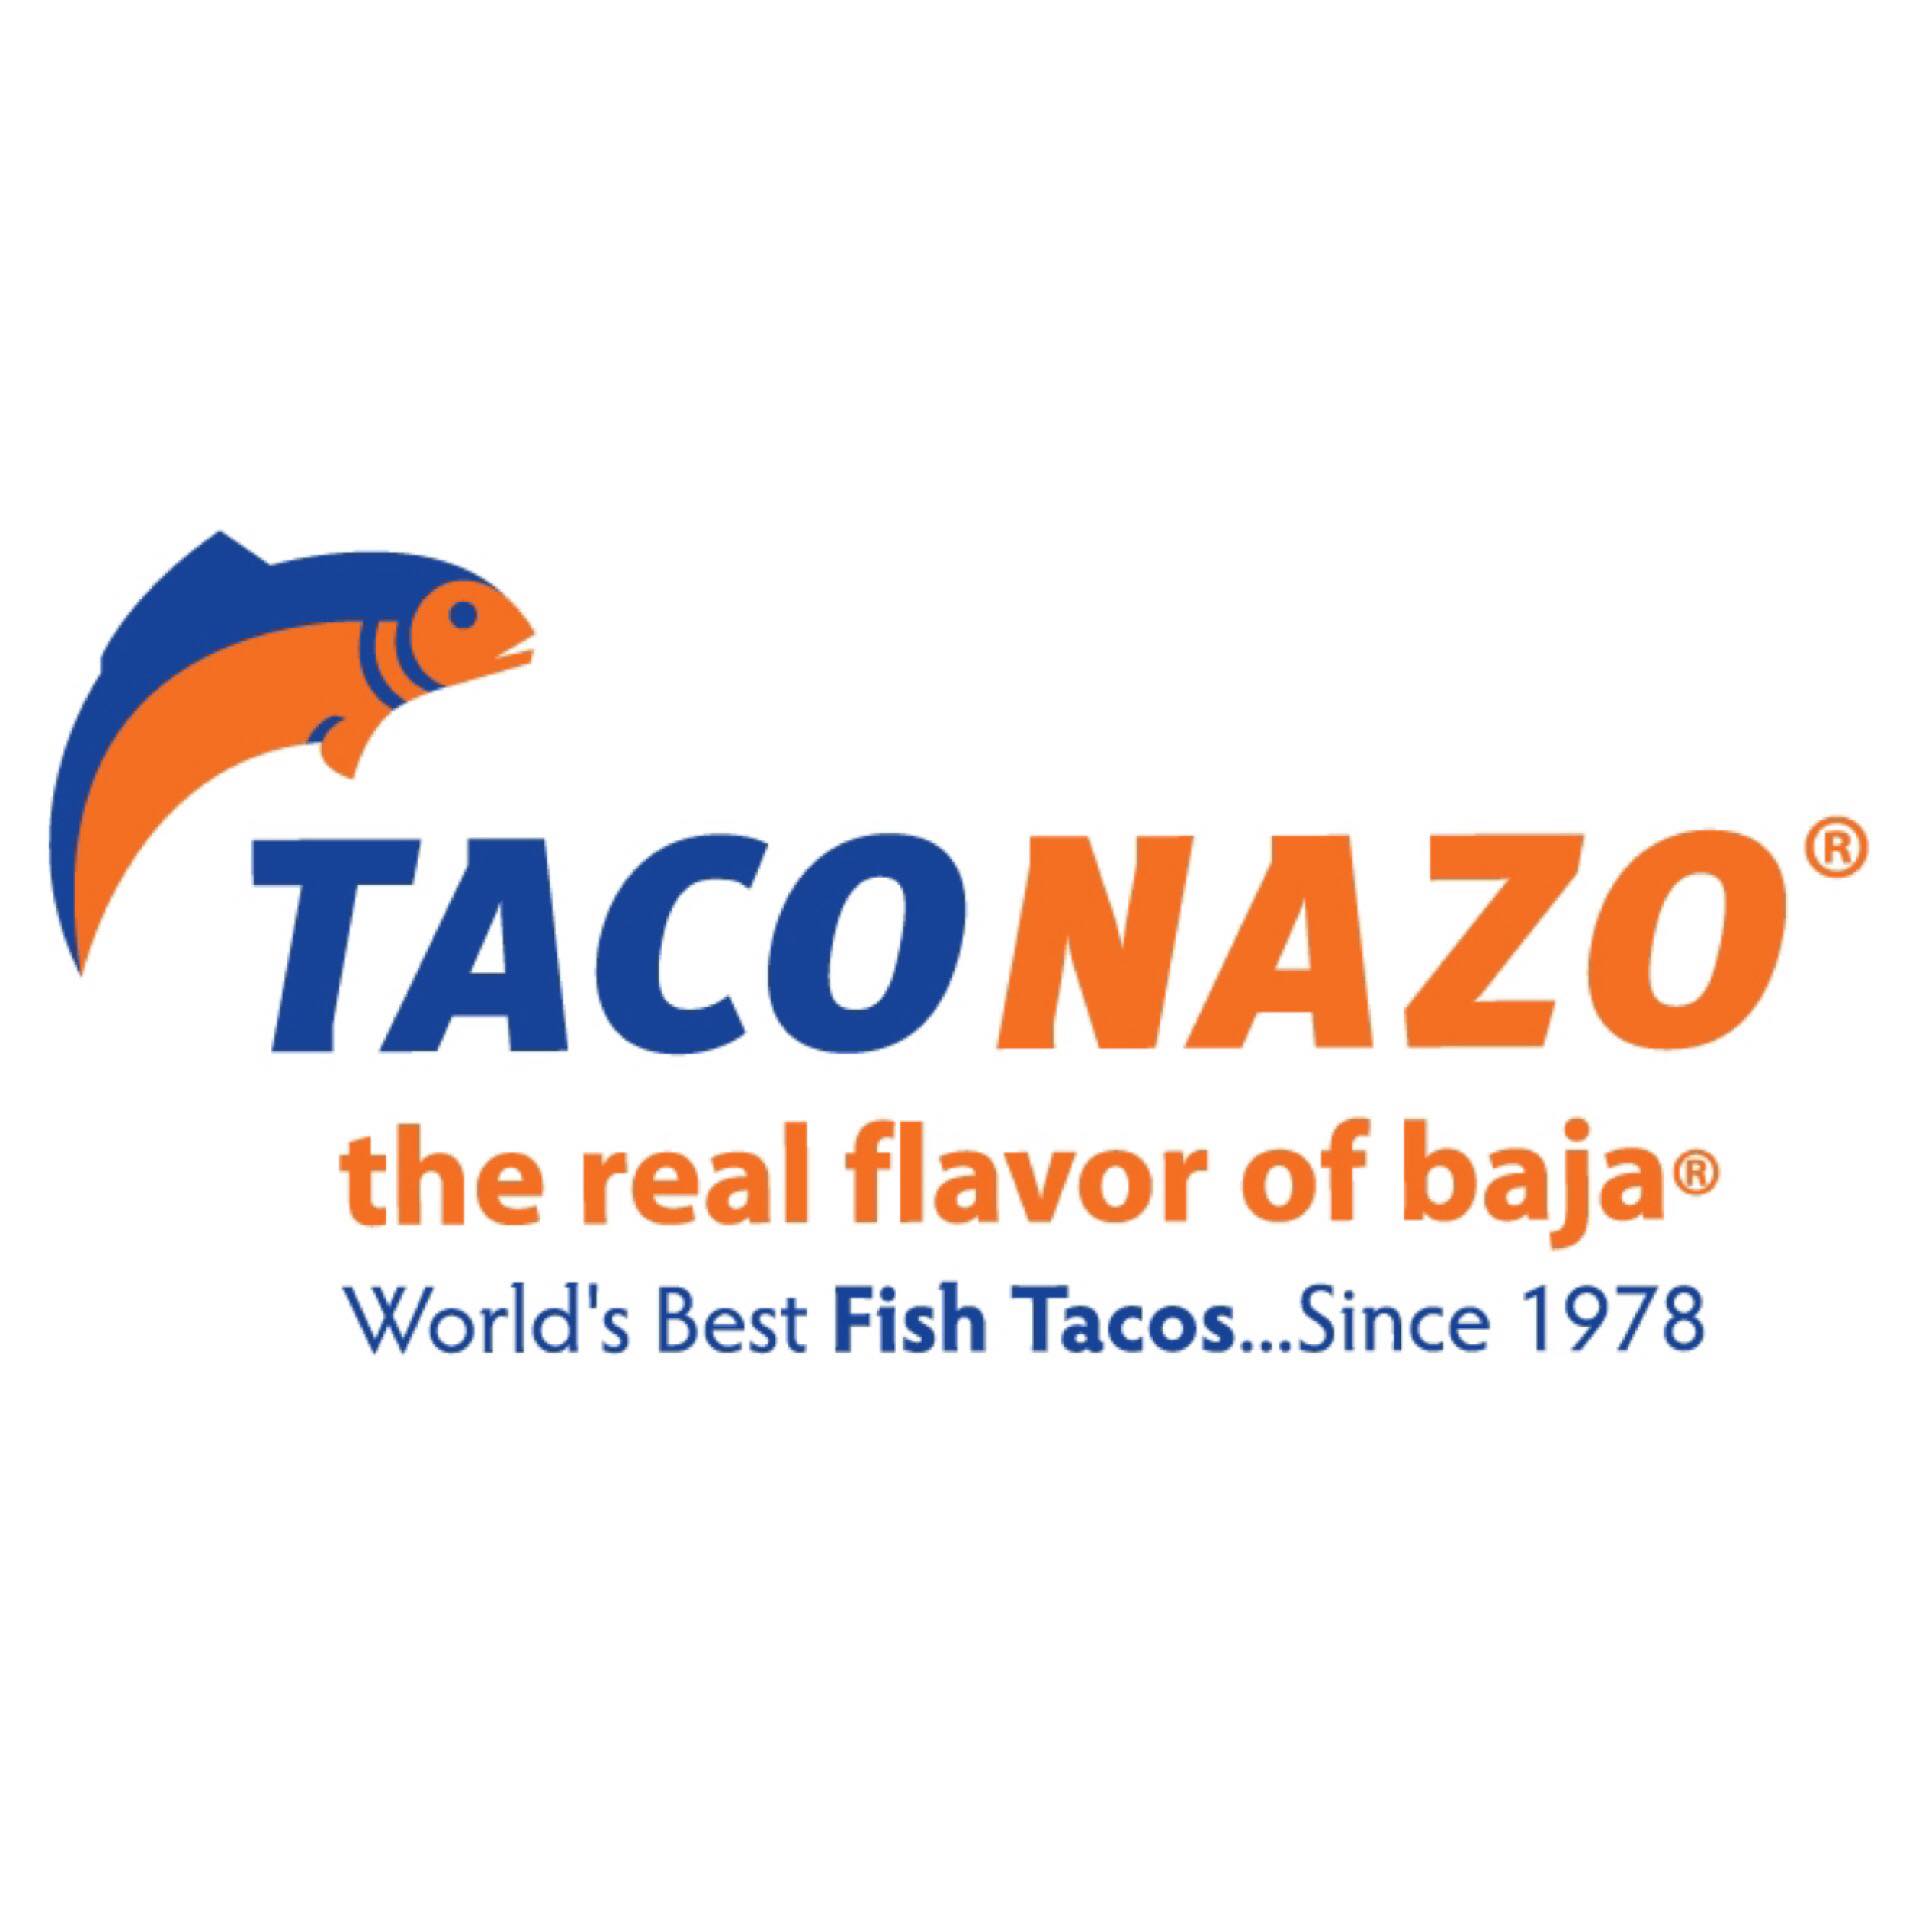 Taco Nazo